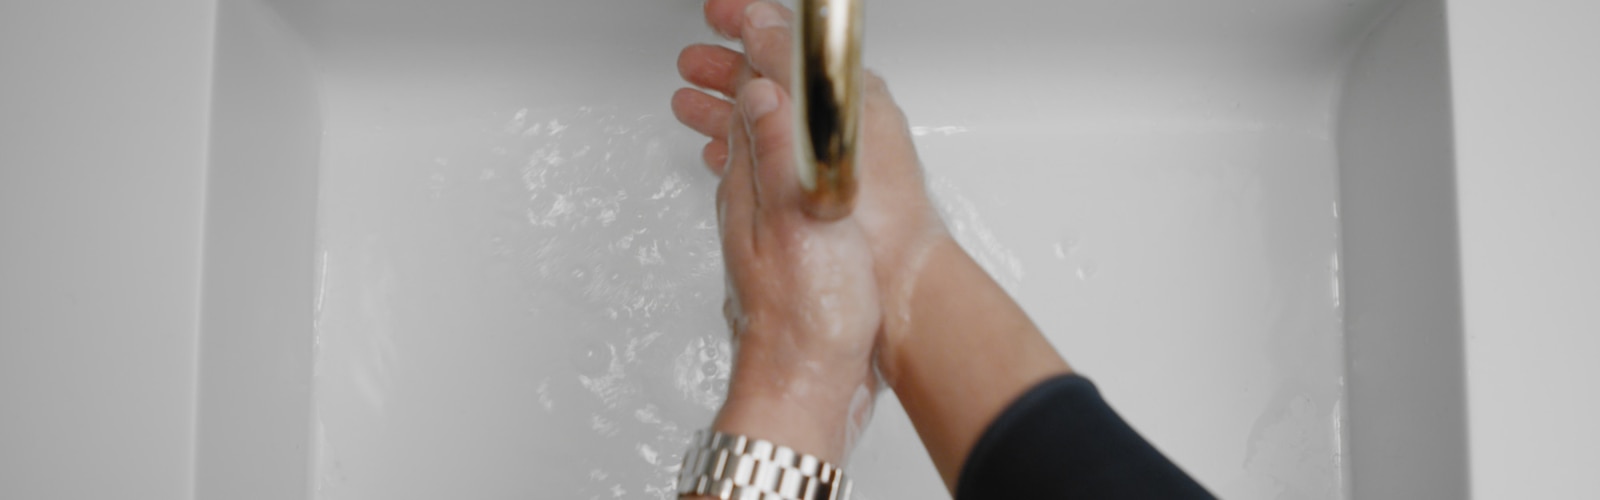 Två händer under rinnande vatten från en kran